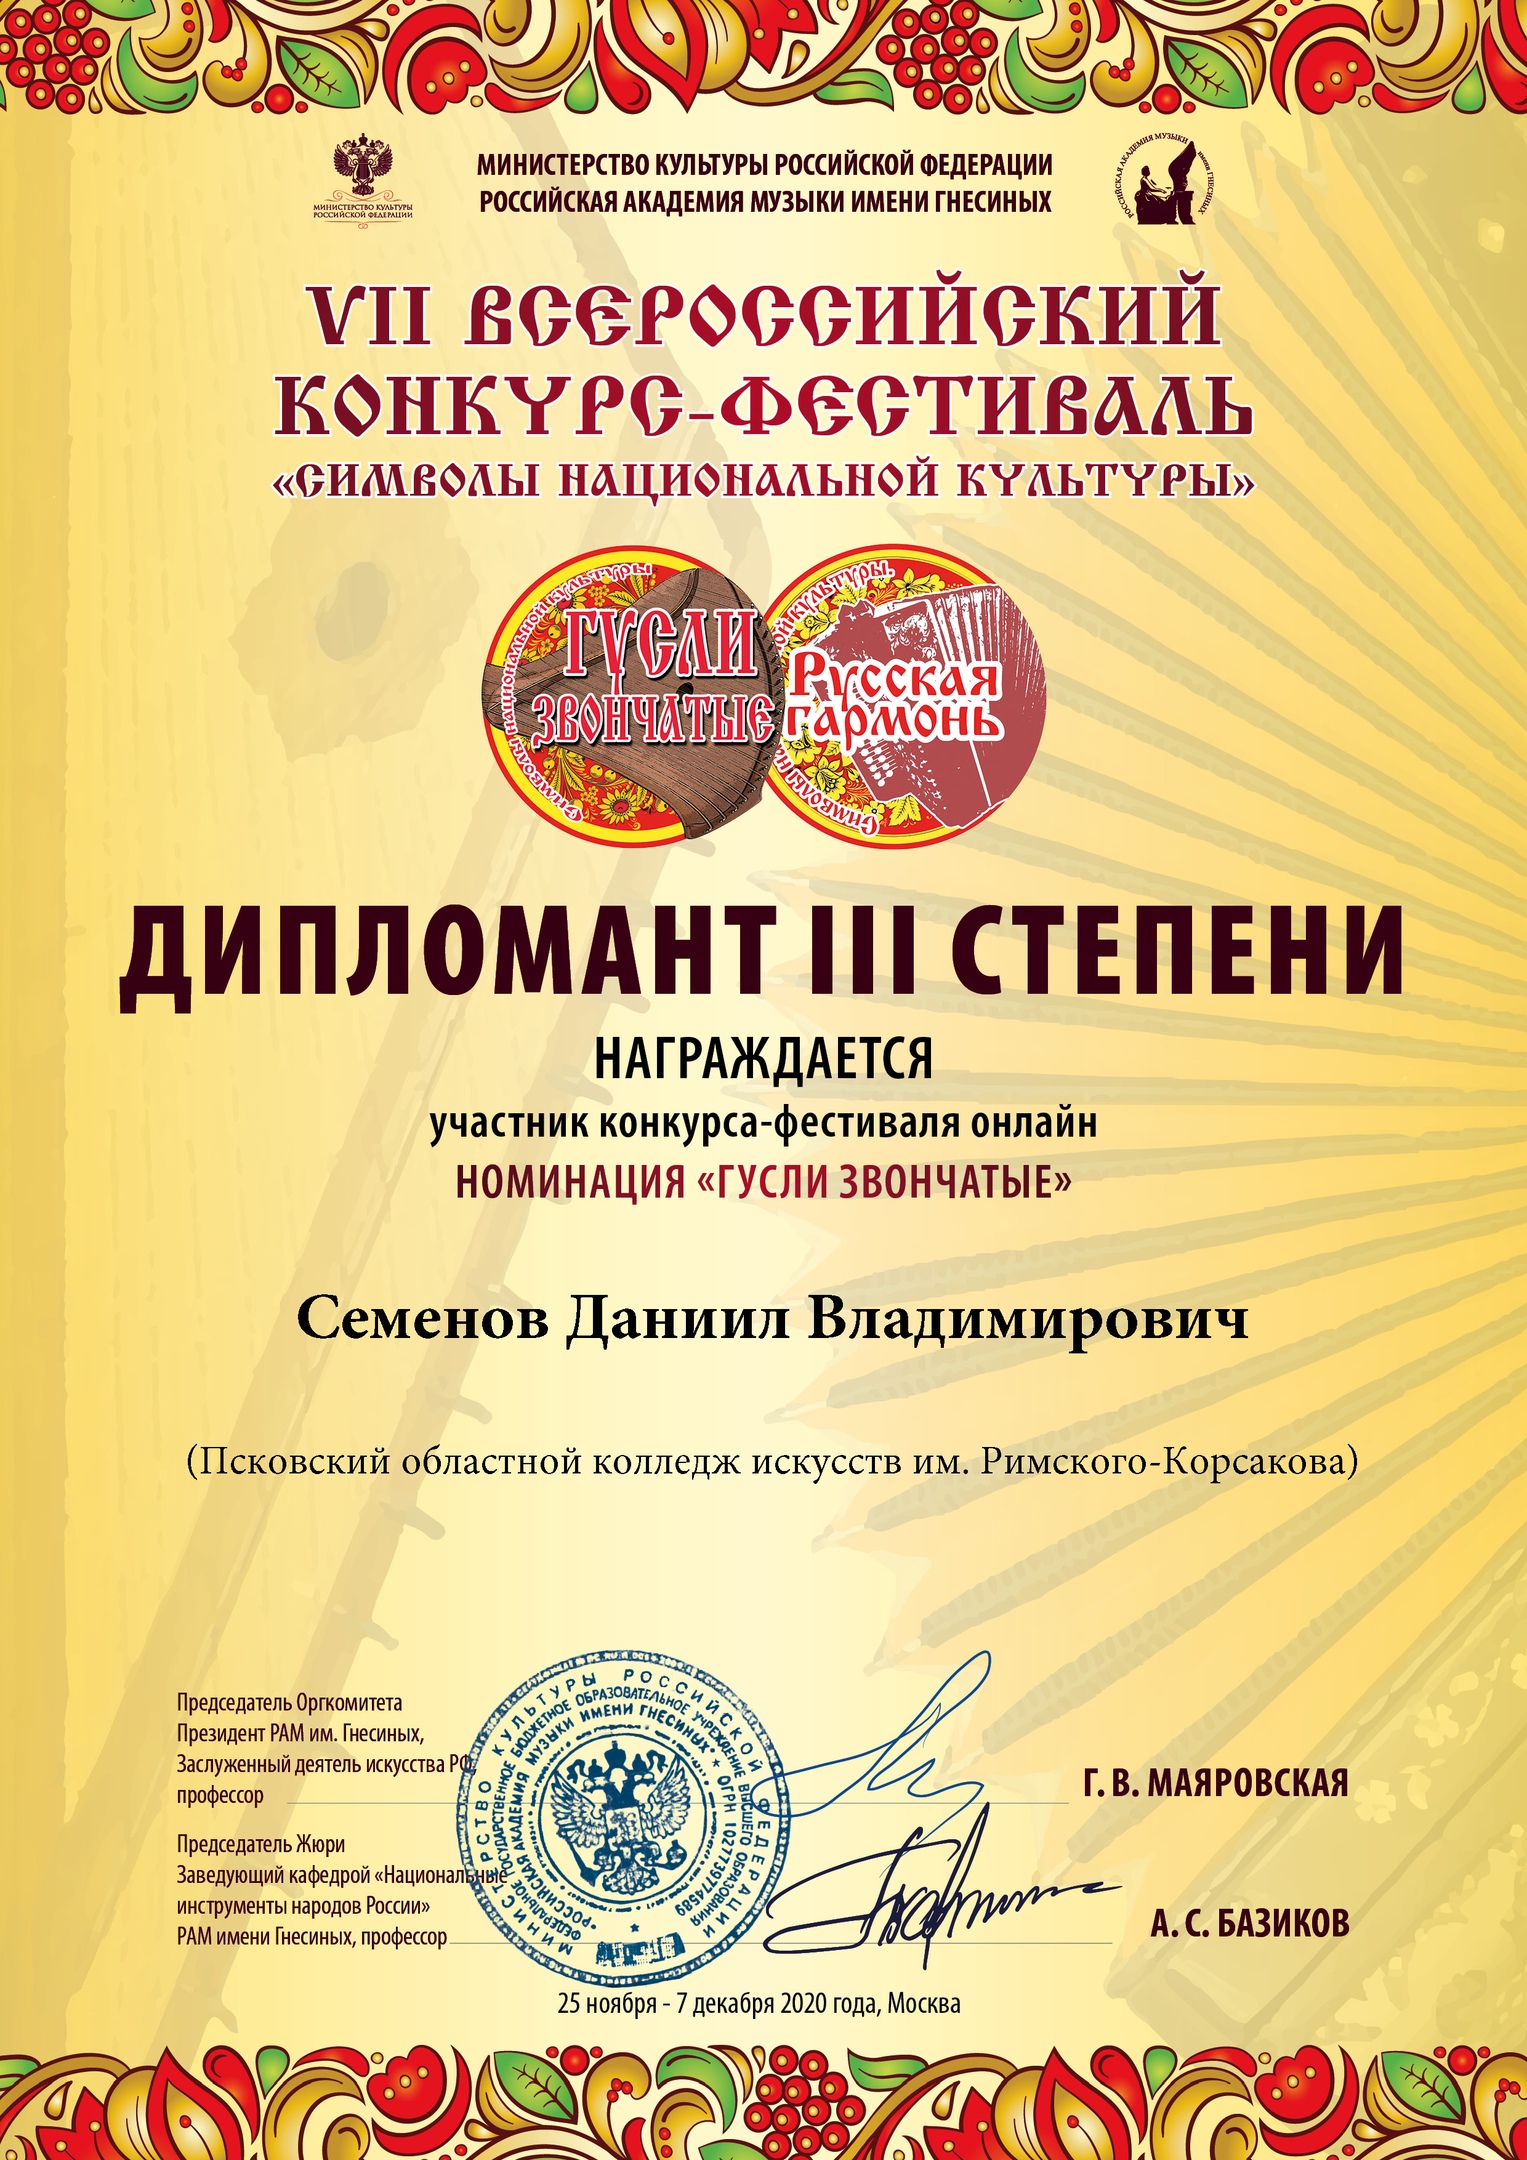 student-kolledzha-iskusstv-daniil-semyonov-stal-diplomantom-vserossijskogo-festivalya-konkursa